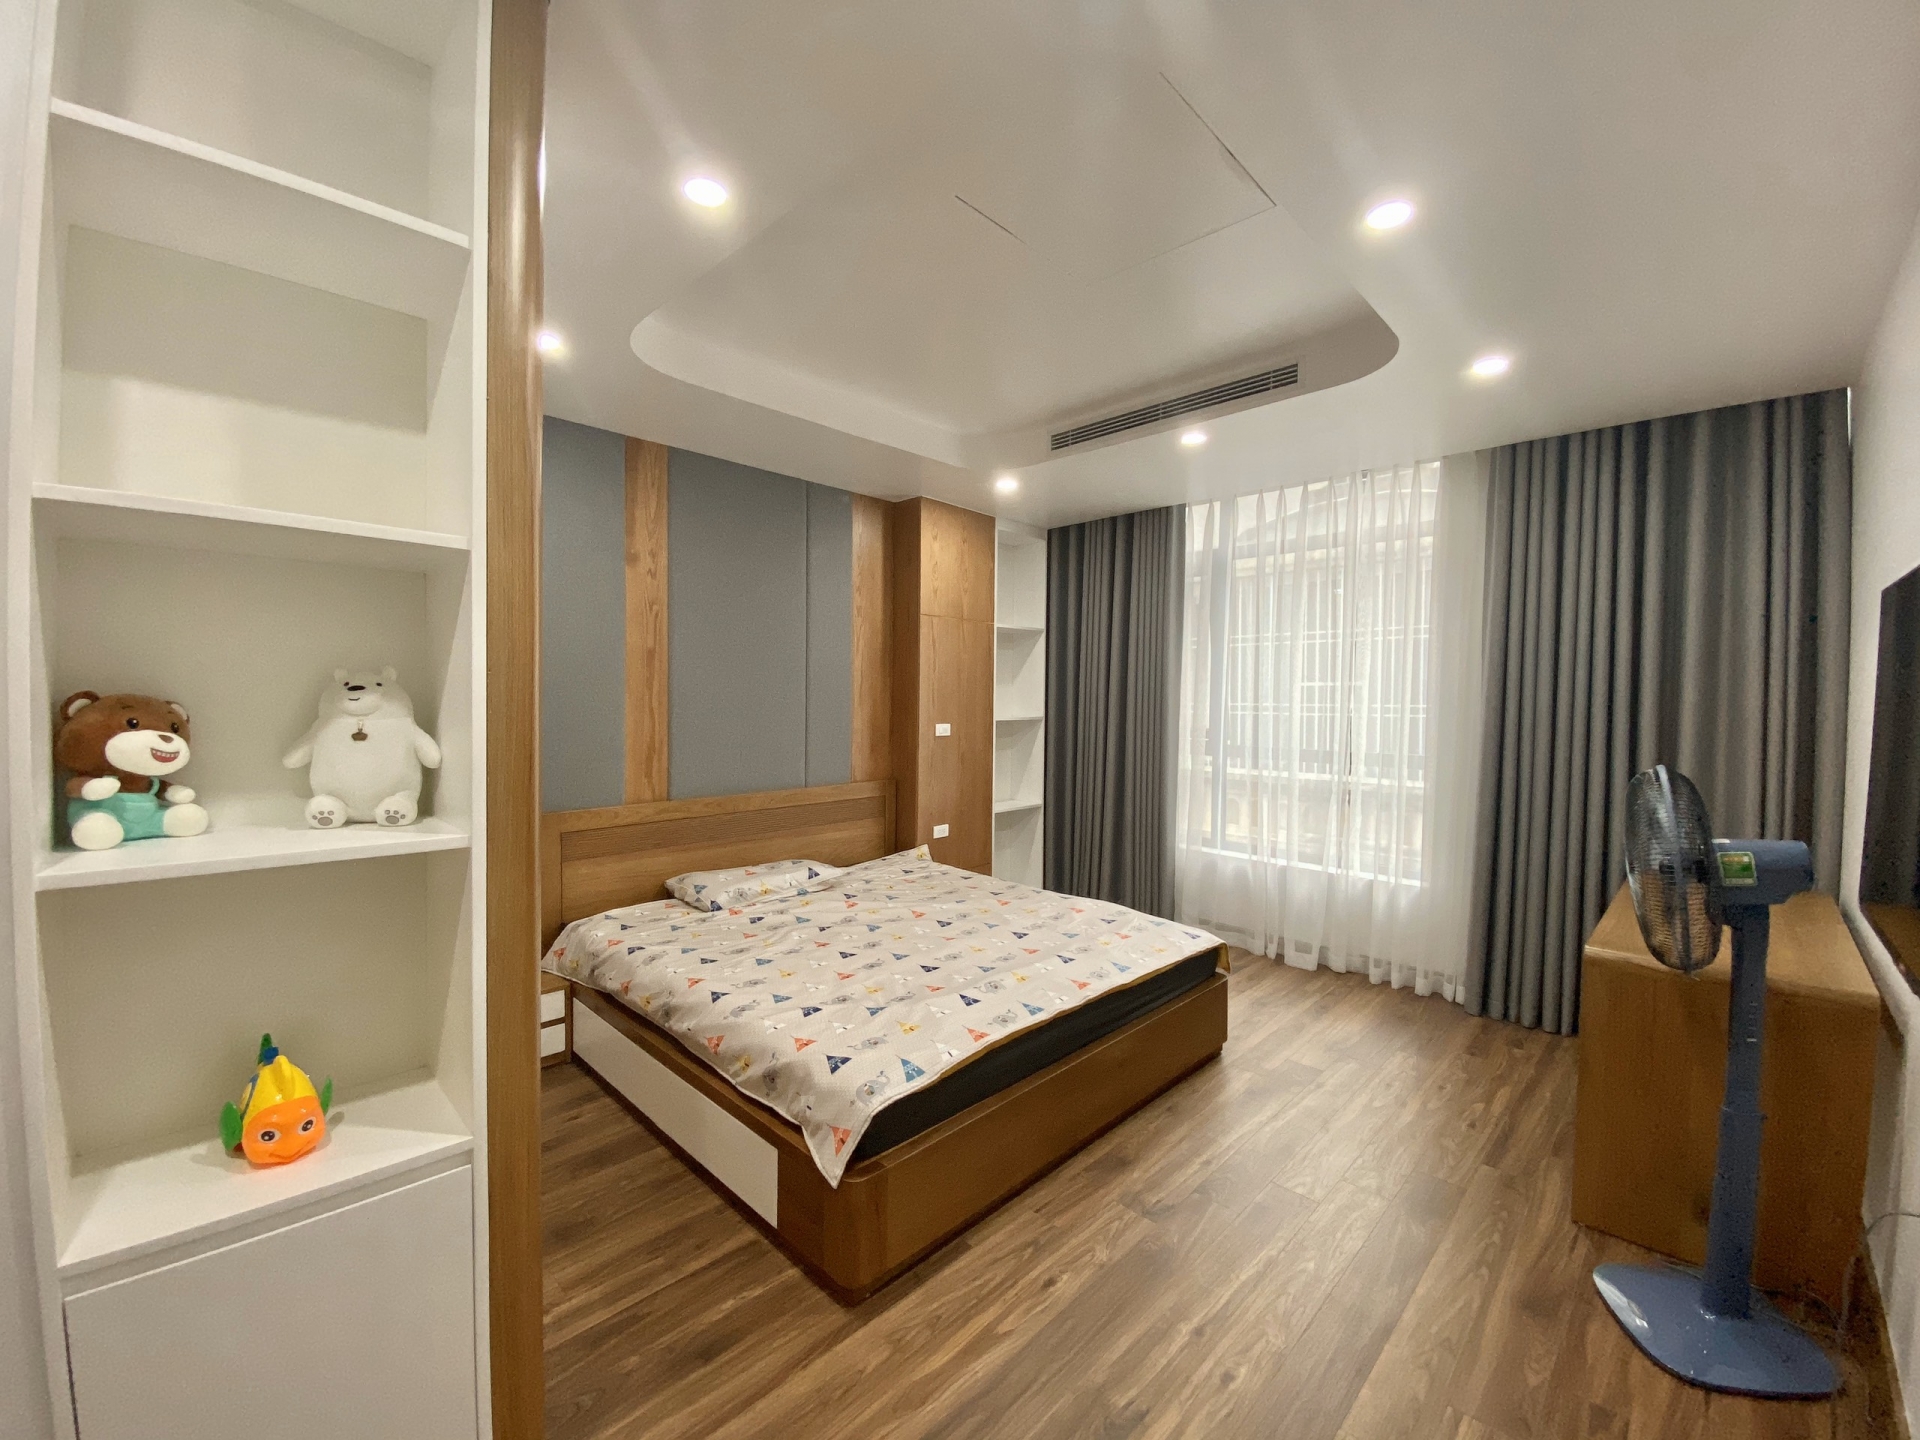 Phòng ngủ cũng đi theo hướng tối giản, đề cao công năng sử dụng. Kiểu nội thất âm tường, nội thất thông minh giúp các phòng ngủ trông rộng rãi và gọn gàng hơn.